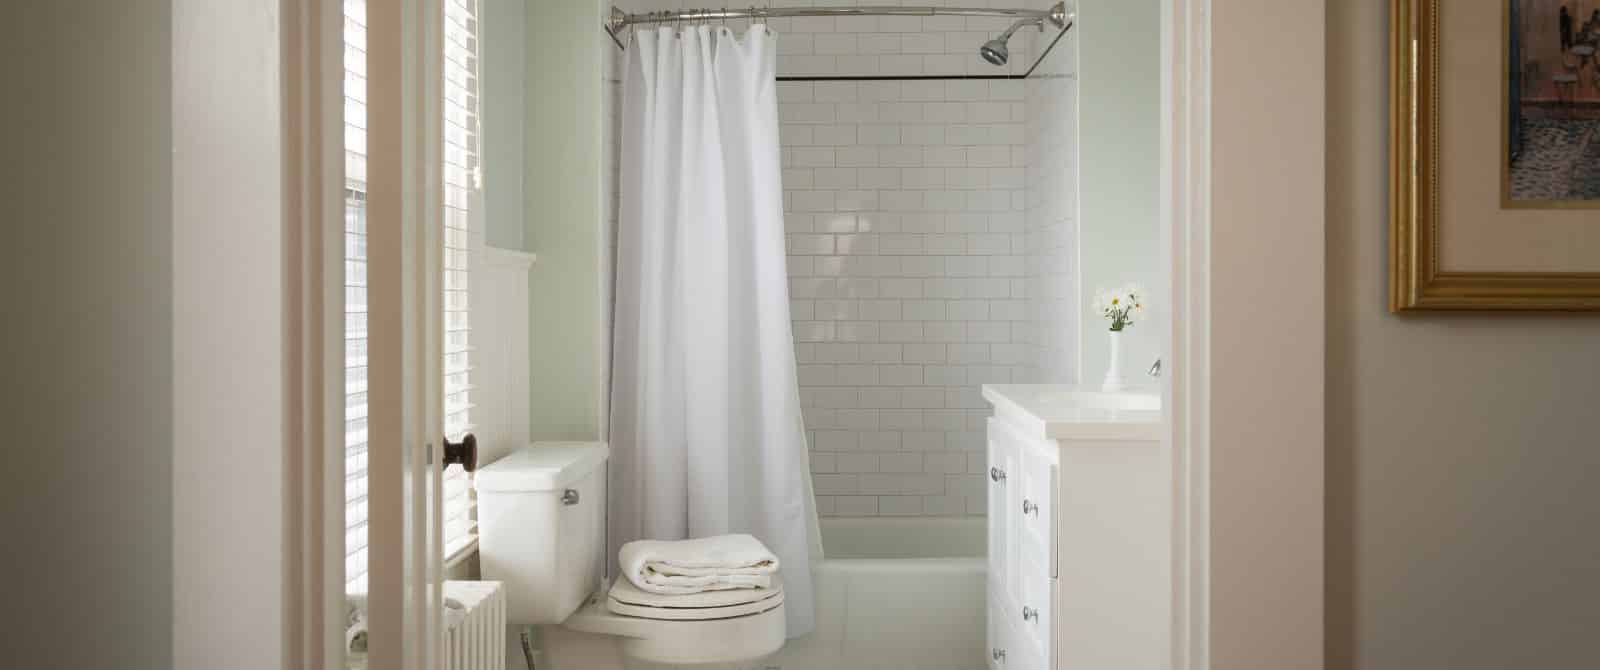 Bathroom with light green walls, white toilet, white dresser, white tub, white curtain, and white tile